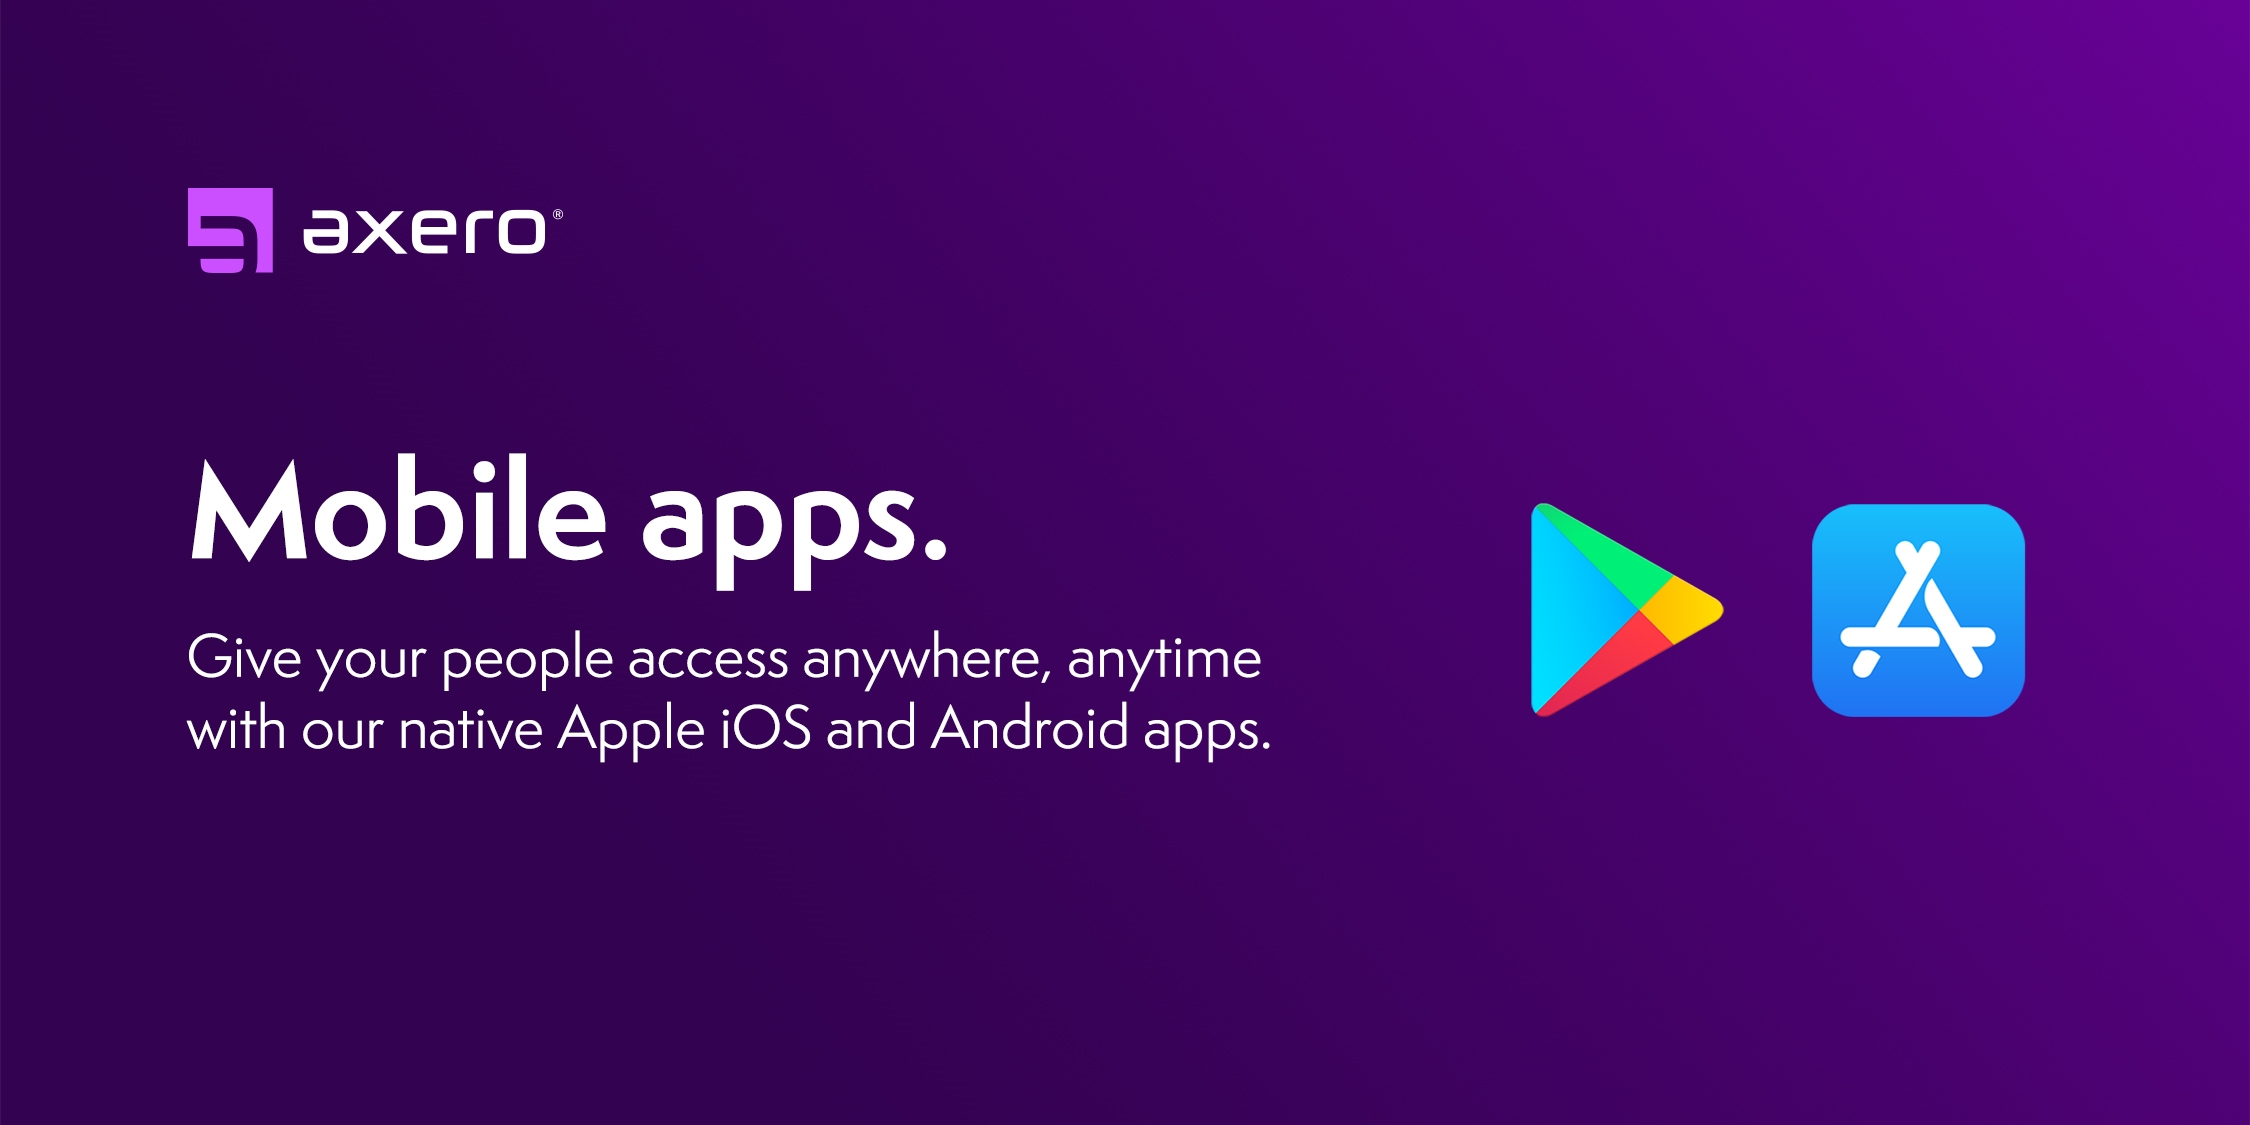 axero mobile apps